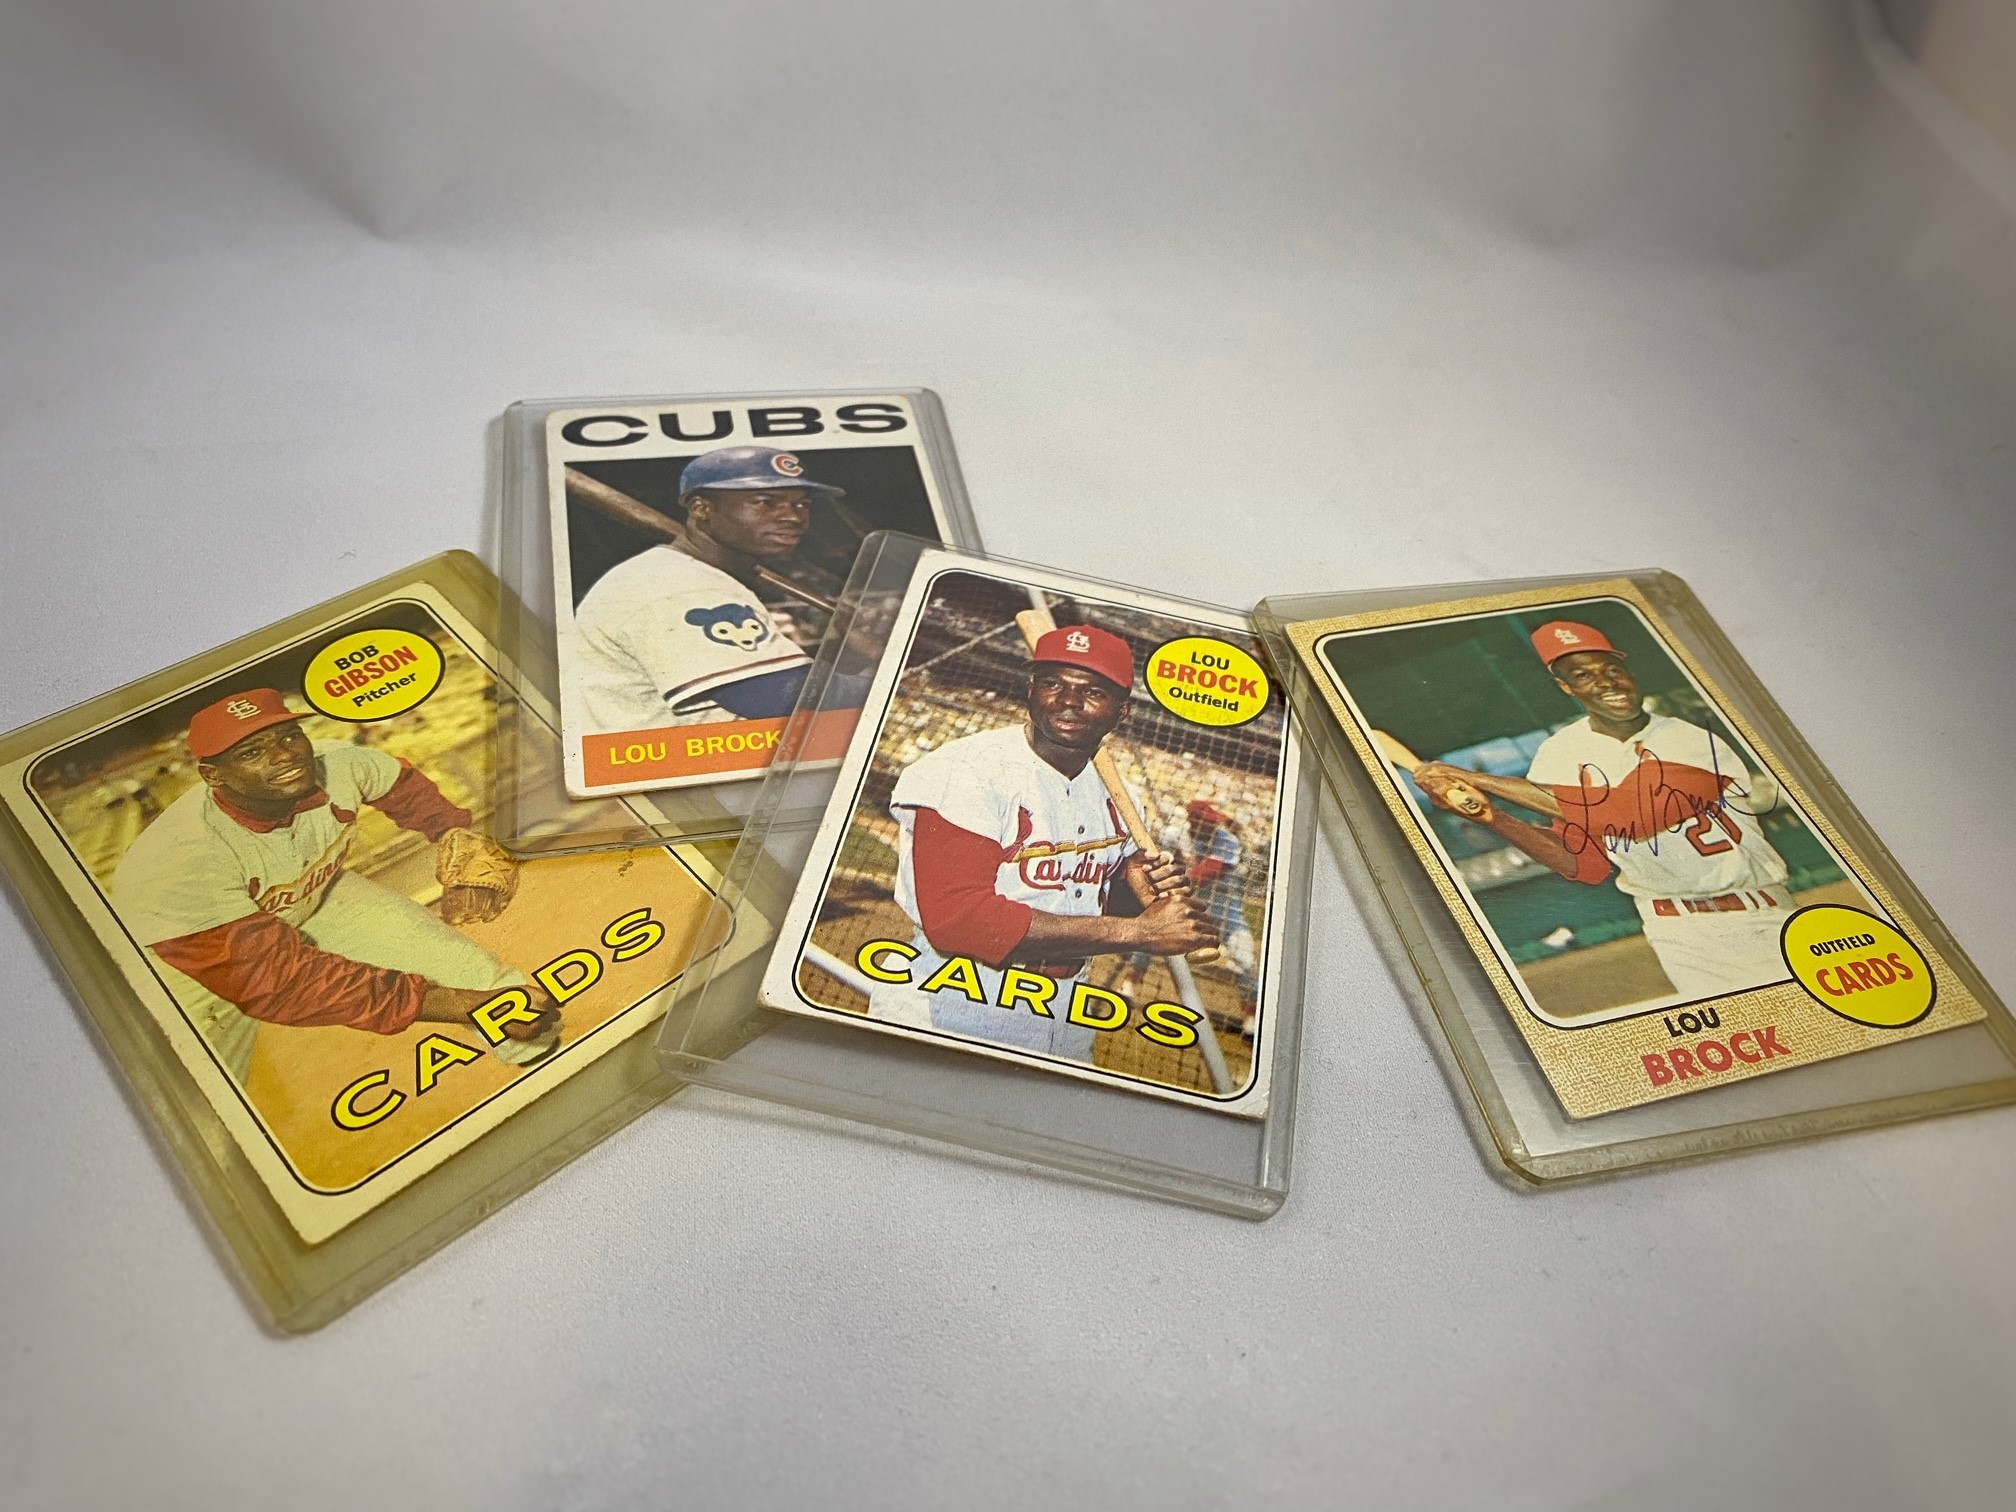 Lot 555: Baseball Cards: Lou Brock (Cardinals) (one signed), Lou Brock (Cubs), Bob Gibson